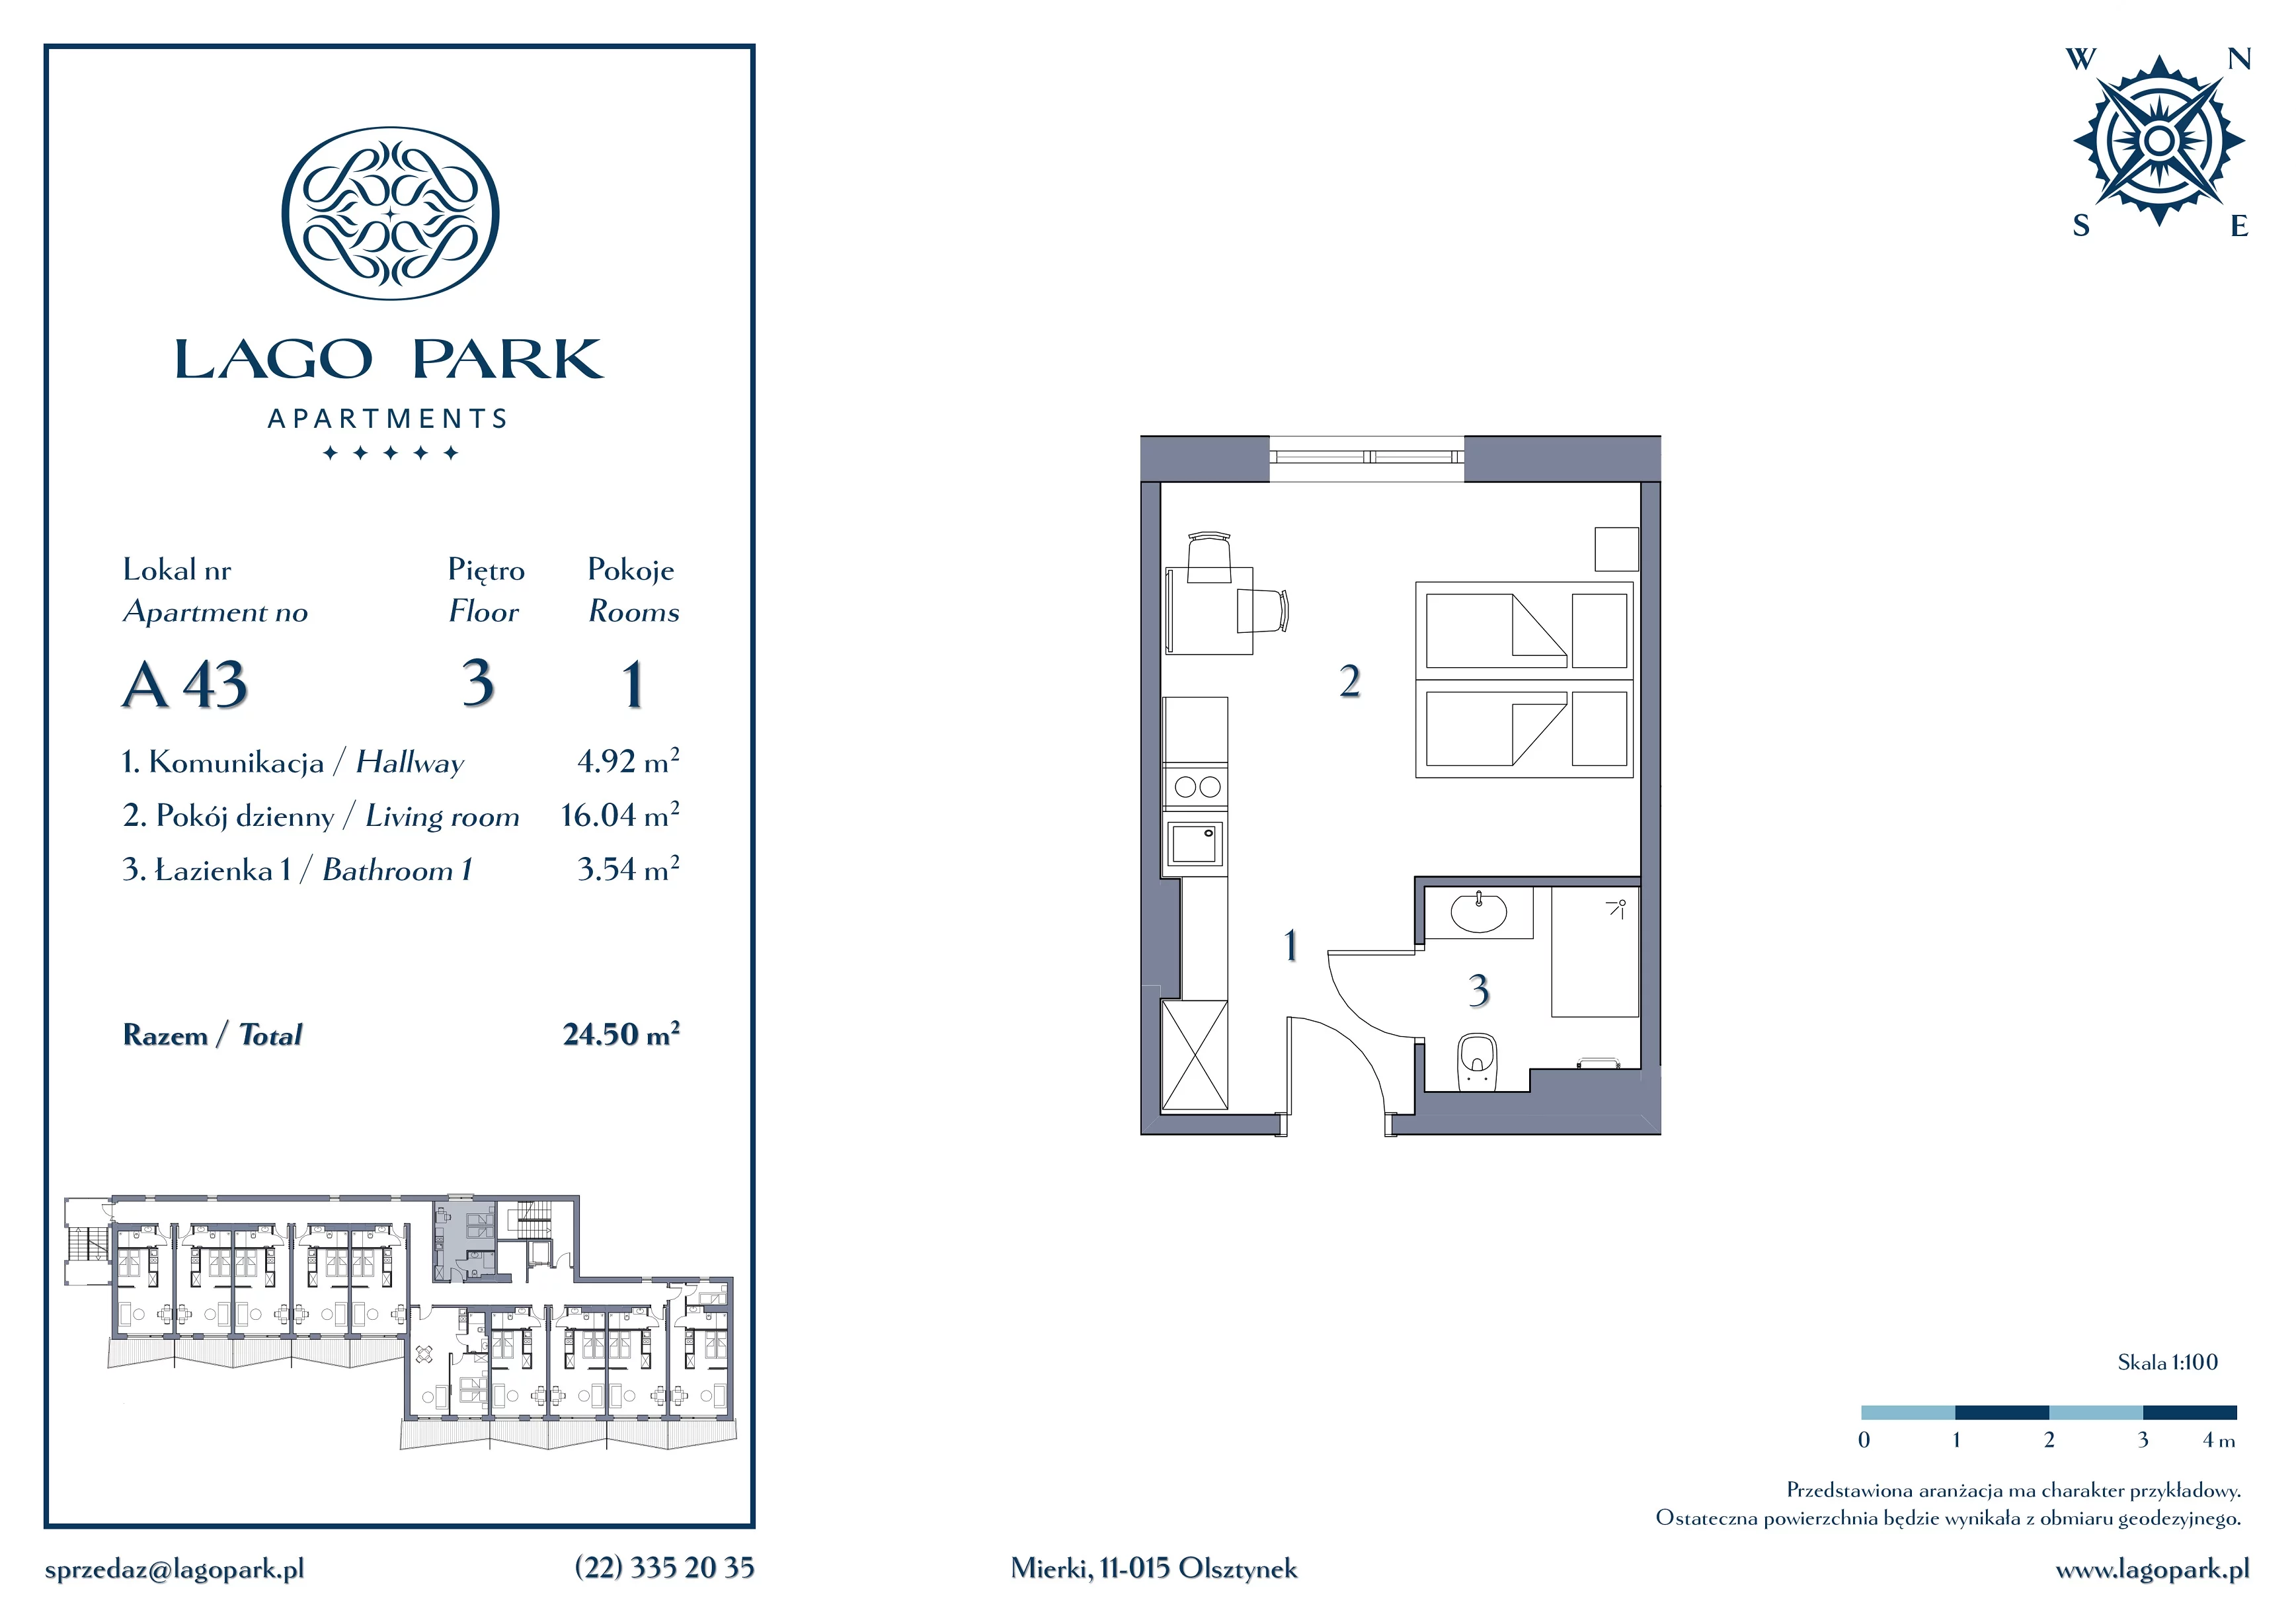 Apartament inwestycyjny 24,50 m², piętro 3, oferta nr A43, Lago Park Apartments by Aries, Mierki, Kołatek 2